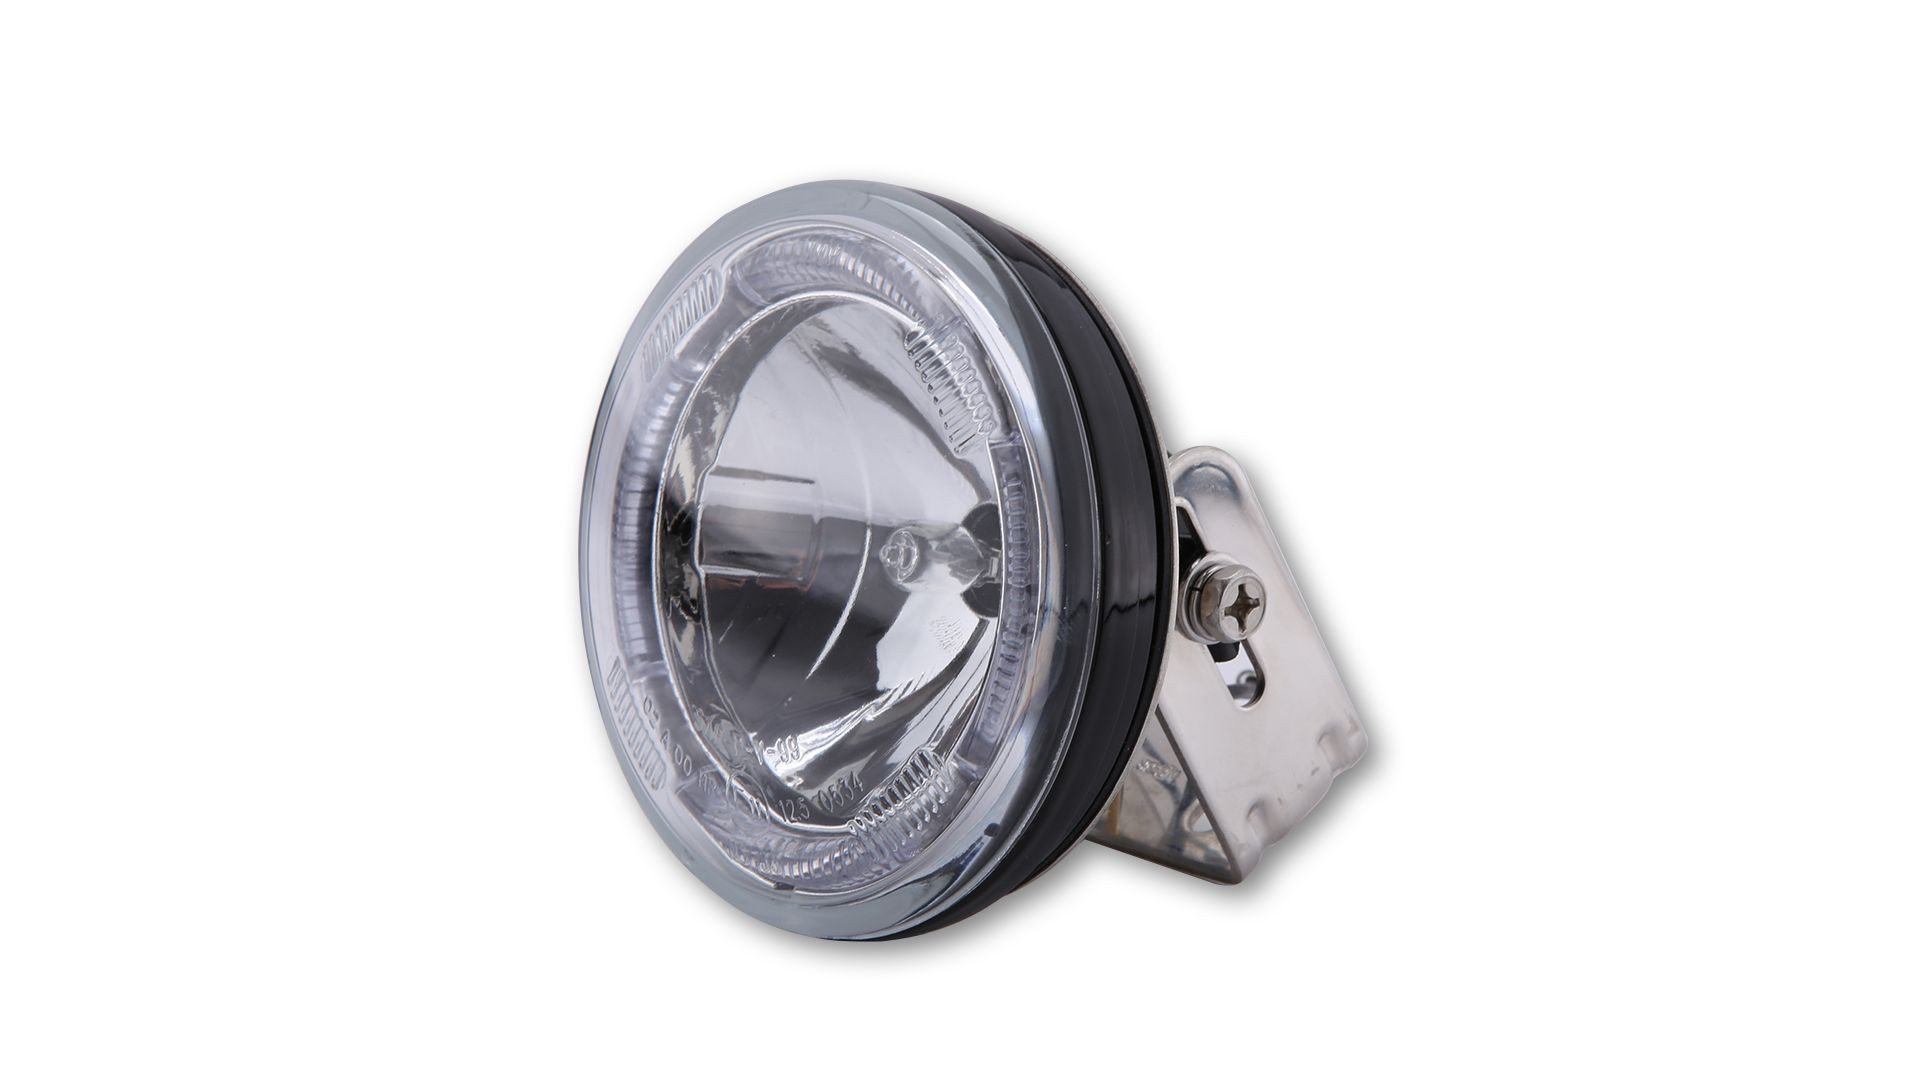 SHIN YO Fernscheinwerfer rund, mit LED-Standlichtring, klar, inkl. Halter (Stück)